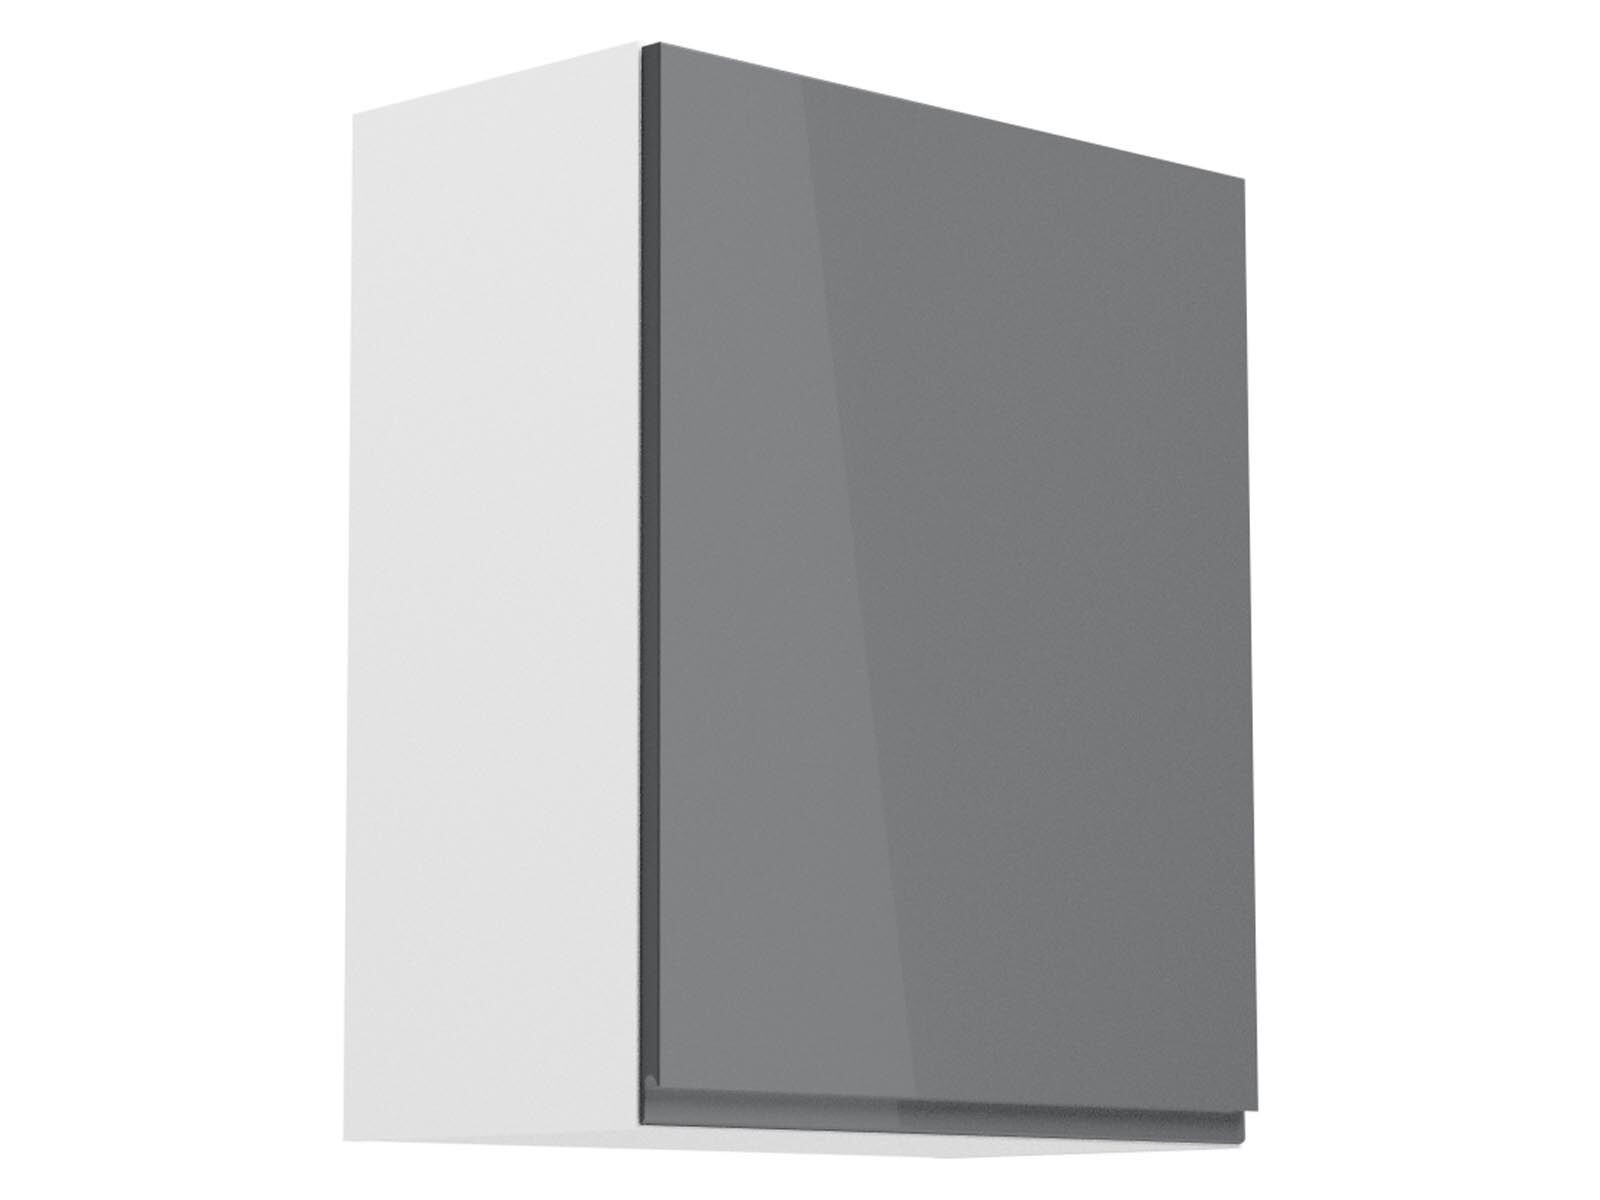 Hoge keukenkast ASPAS 1 deur rechts 60 cm wit/hoogglans grijs